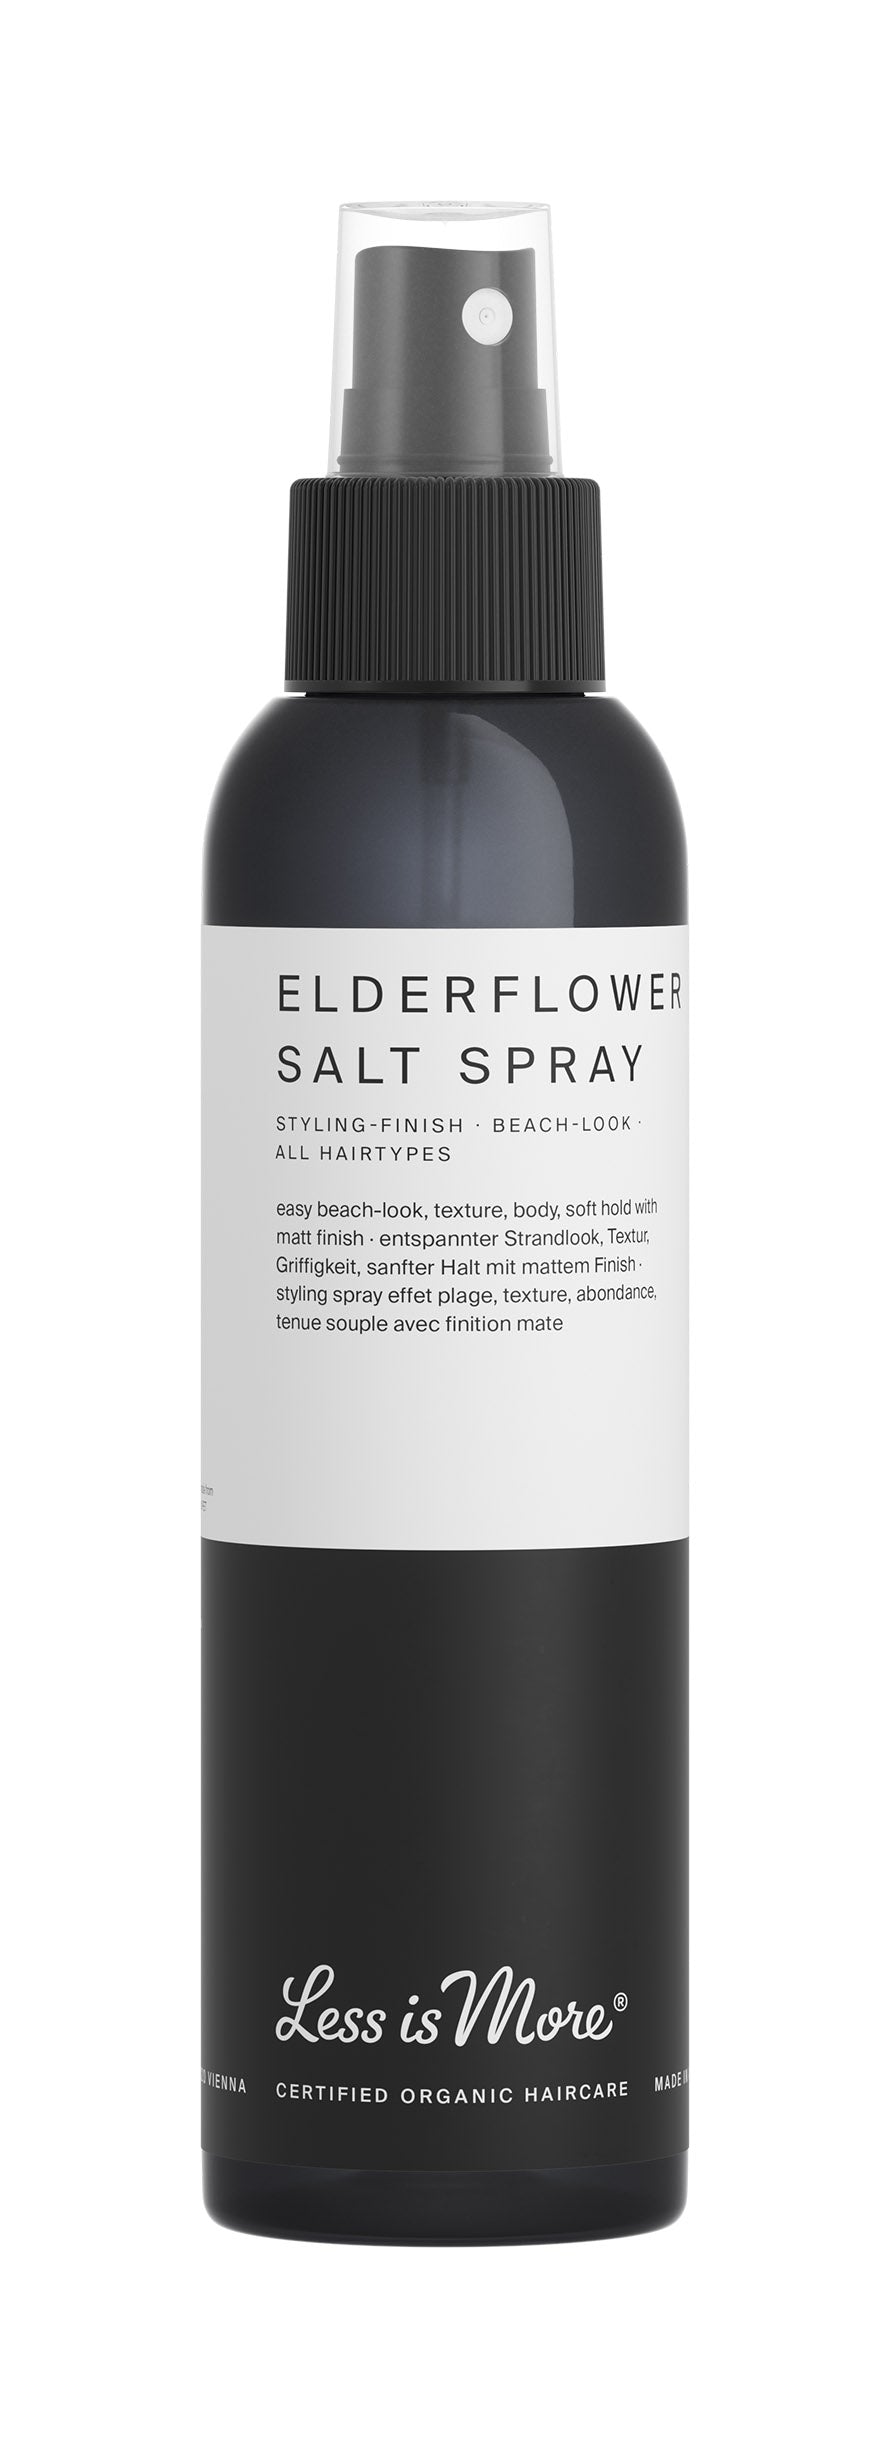 Less is More - Elderflower Salt Spray 150ml